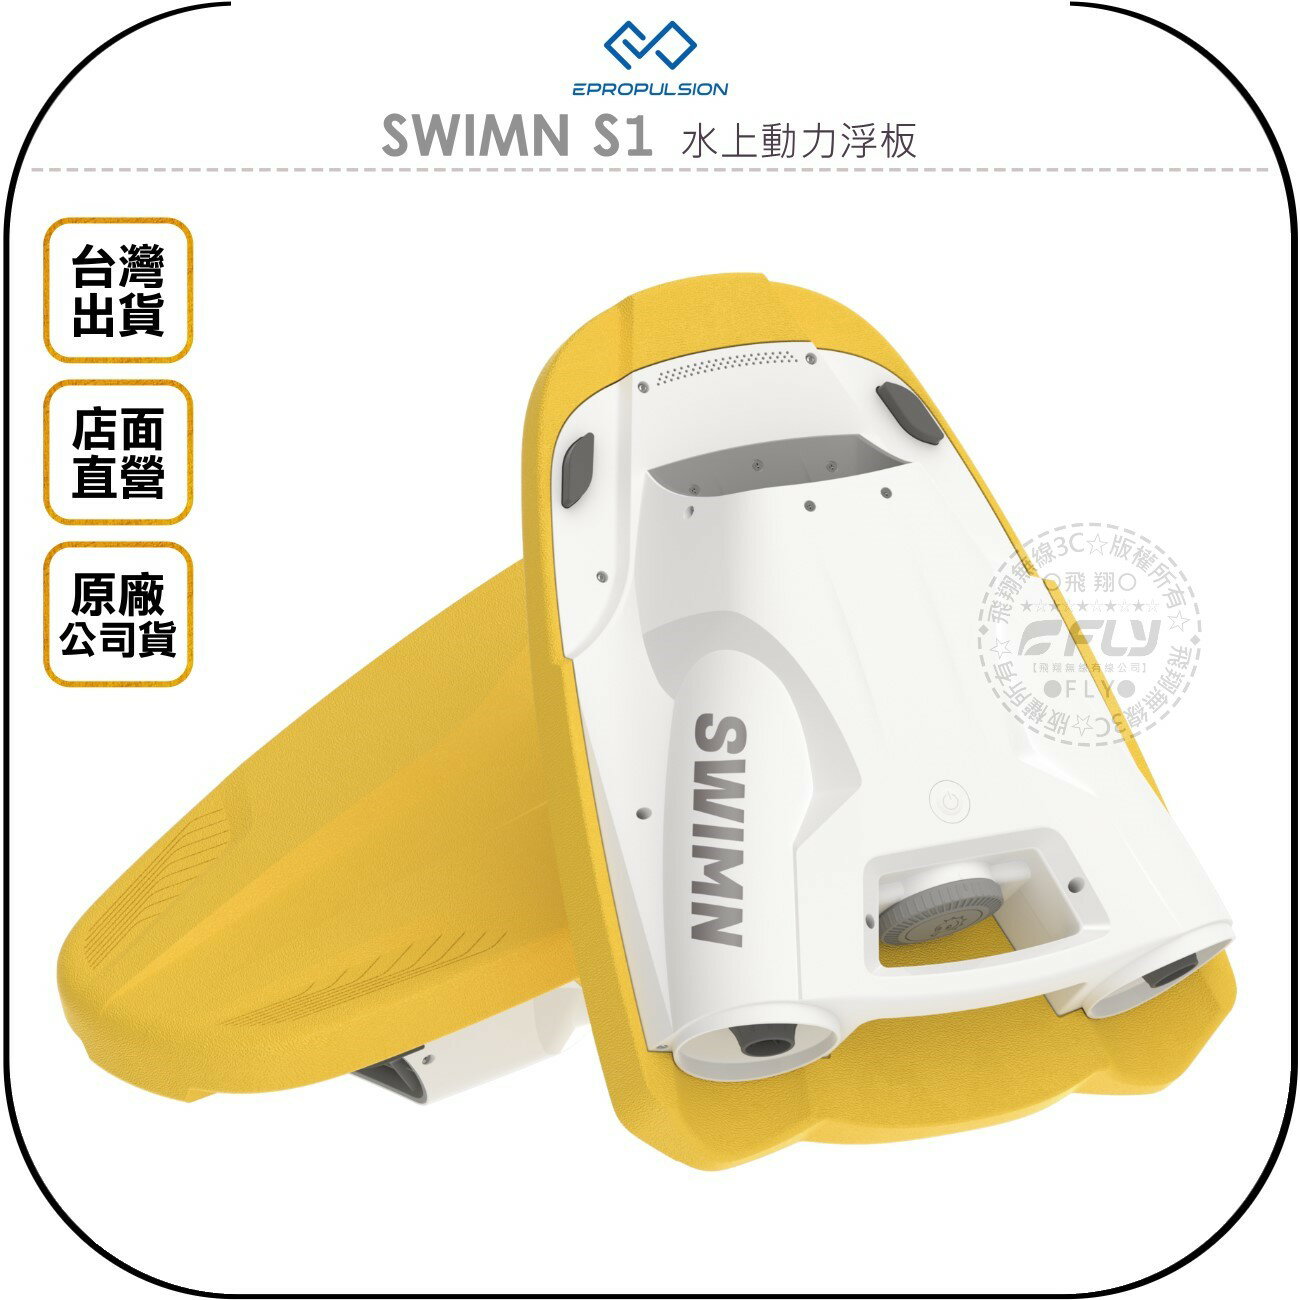 《飛翔無線3C》EPROPULSION 伊普波森 SWIMN S1 水上動力浮板◉公司貨◉水中助推器◉游泳娛樂